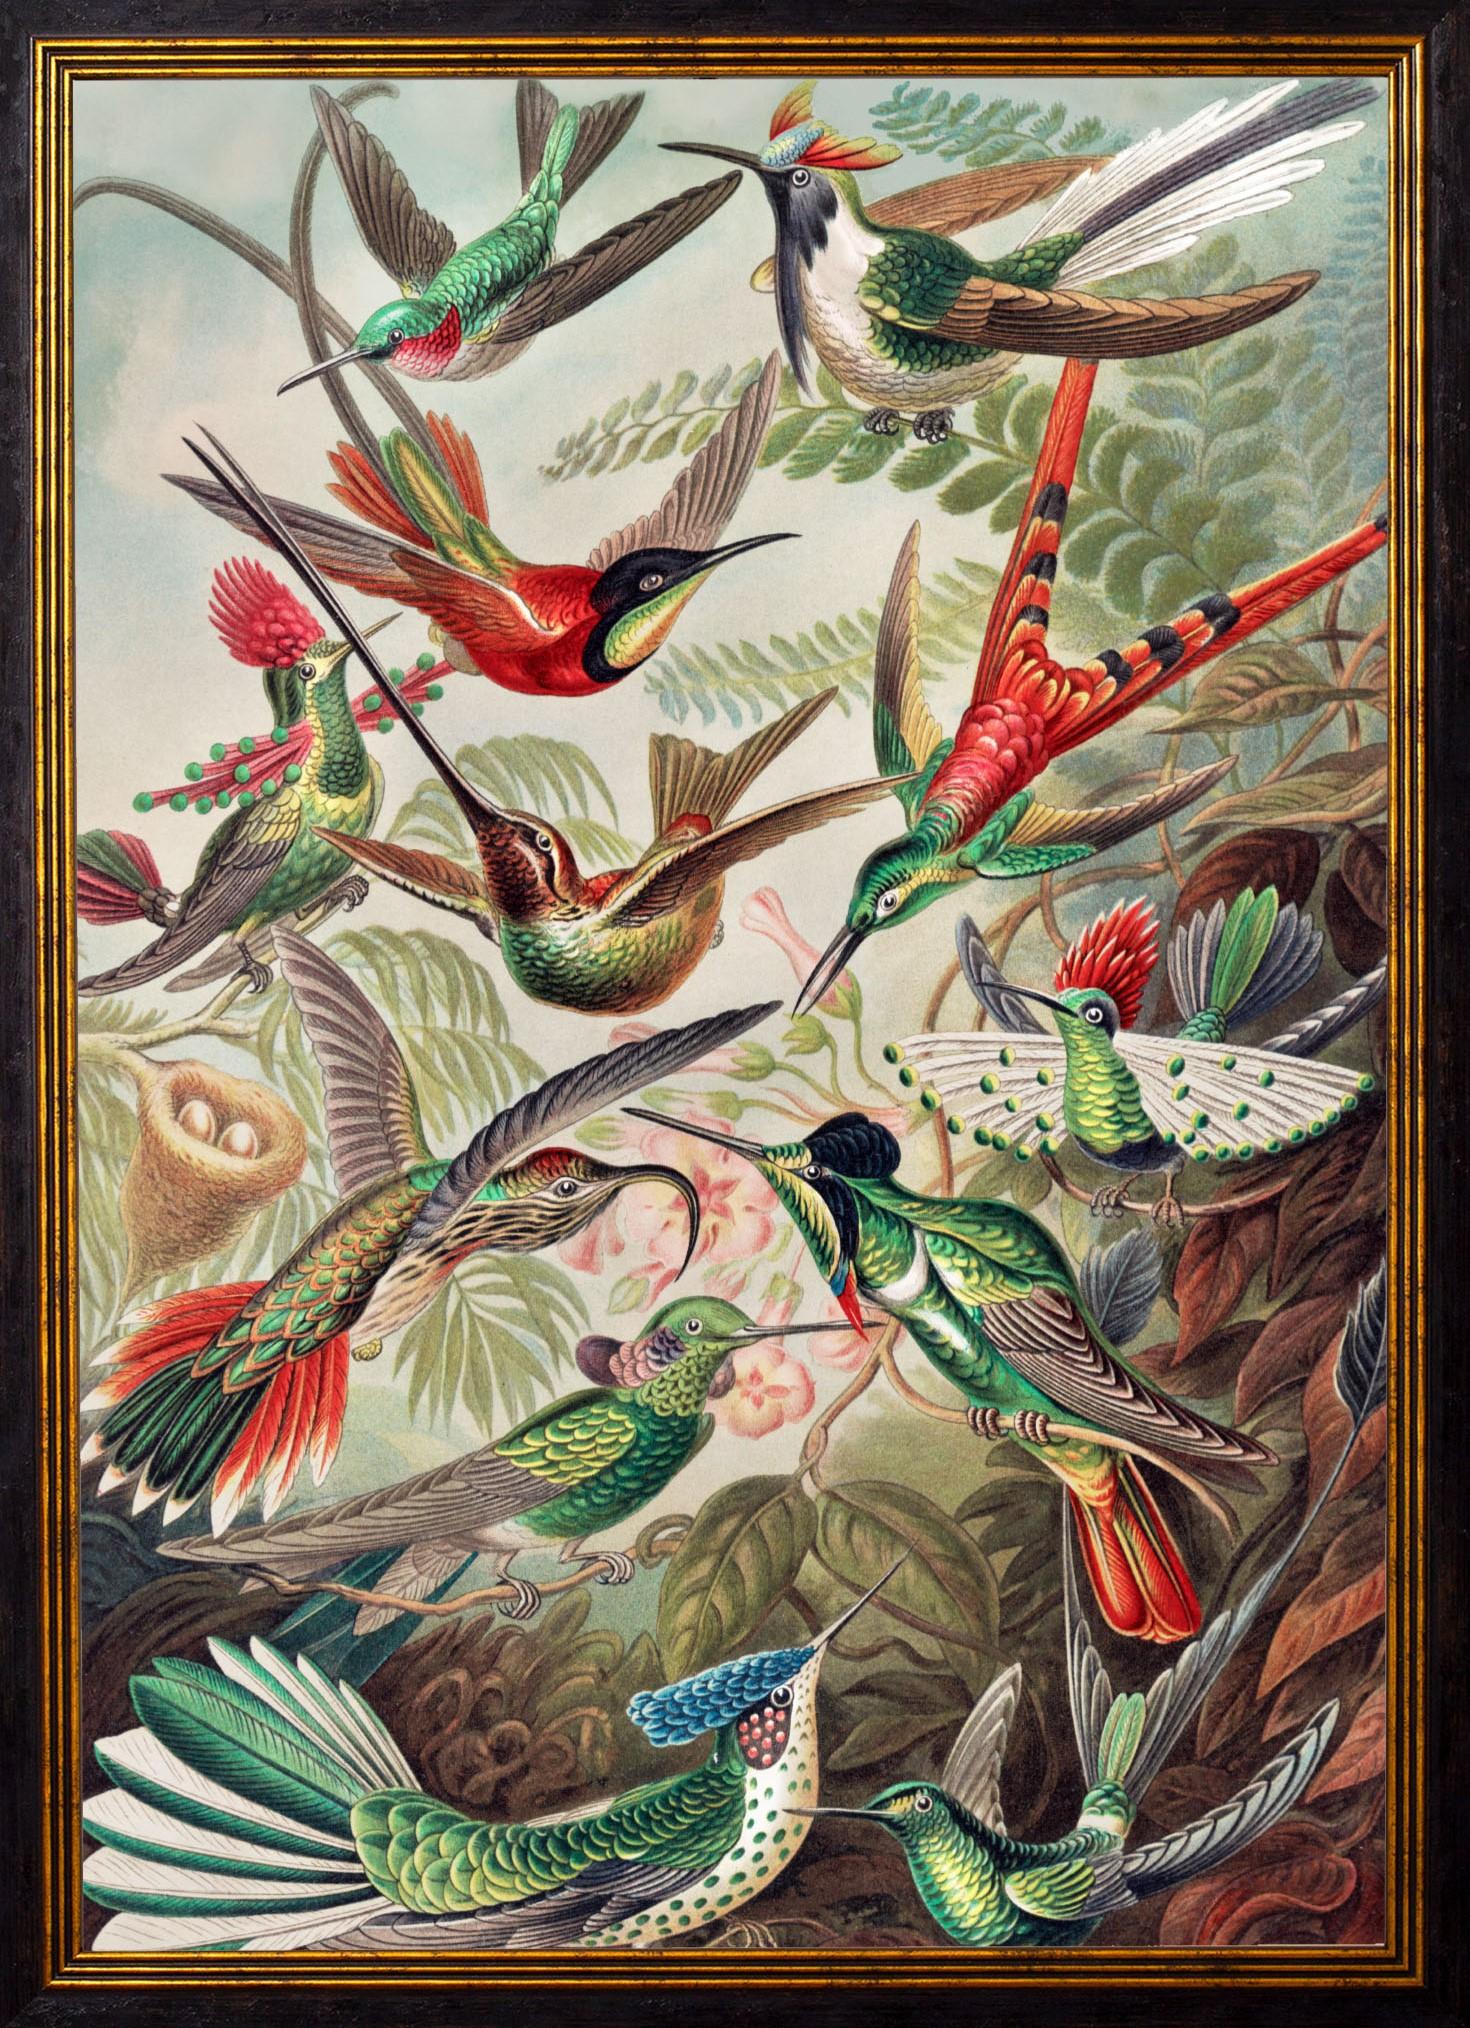 Cette superbe reproduction de colibris fait référence à une magnifique reproduction d'Ernst Haeckel datant des années 1900, ainsi qu'à d'autres pièces similaires ; référence aux anémones de mer et aux mousses d'Ernst Haeckel Kunstformen der Natur